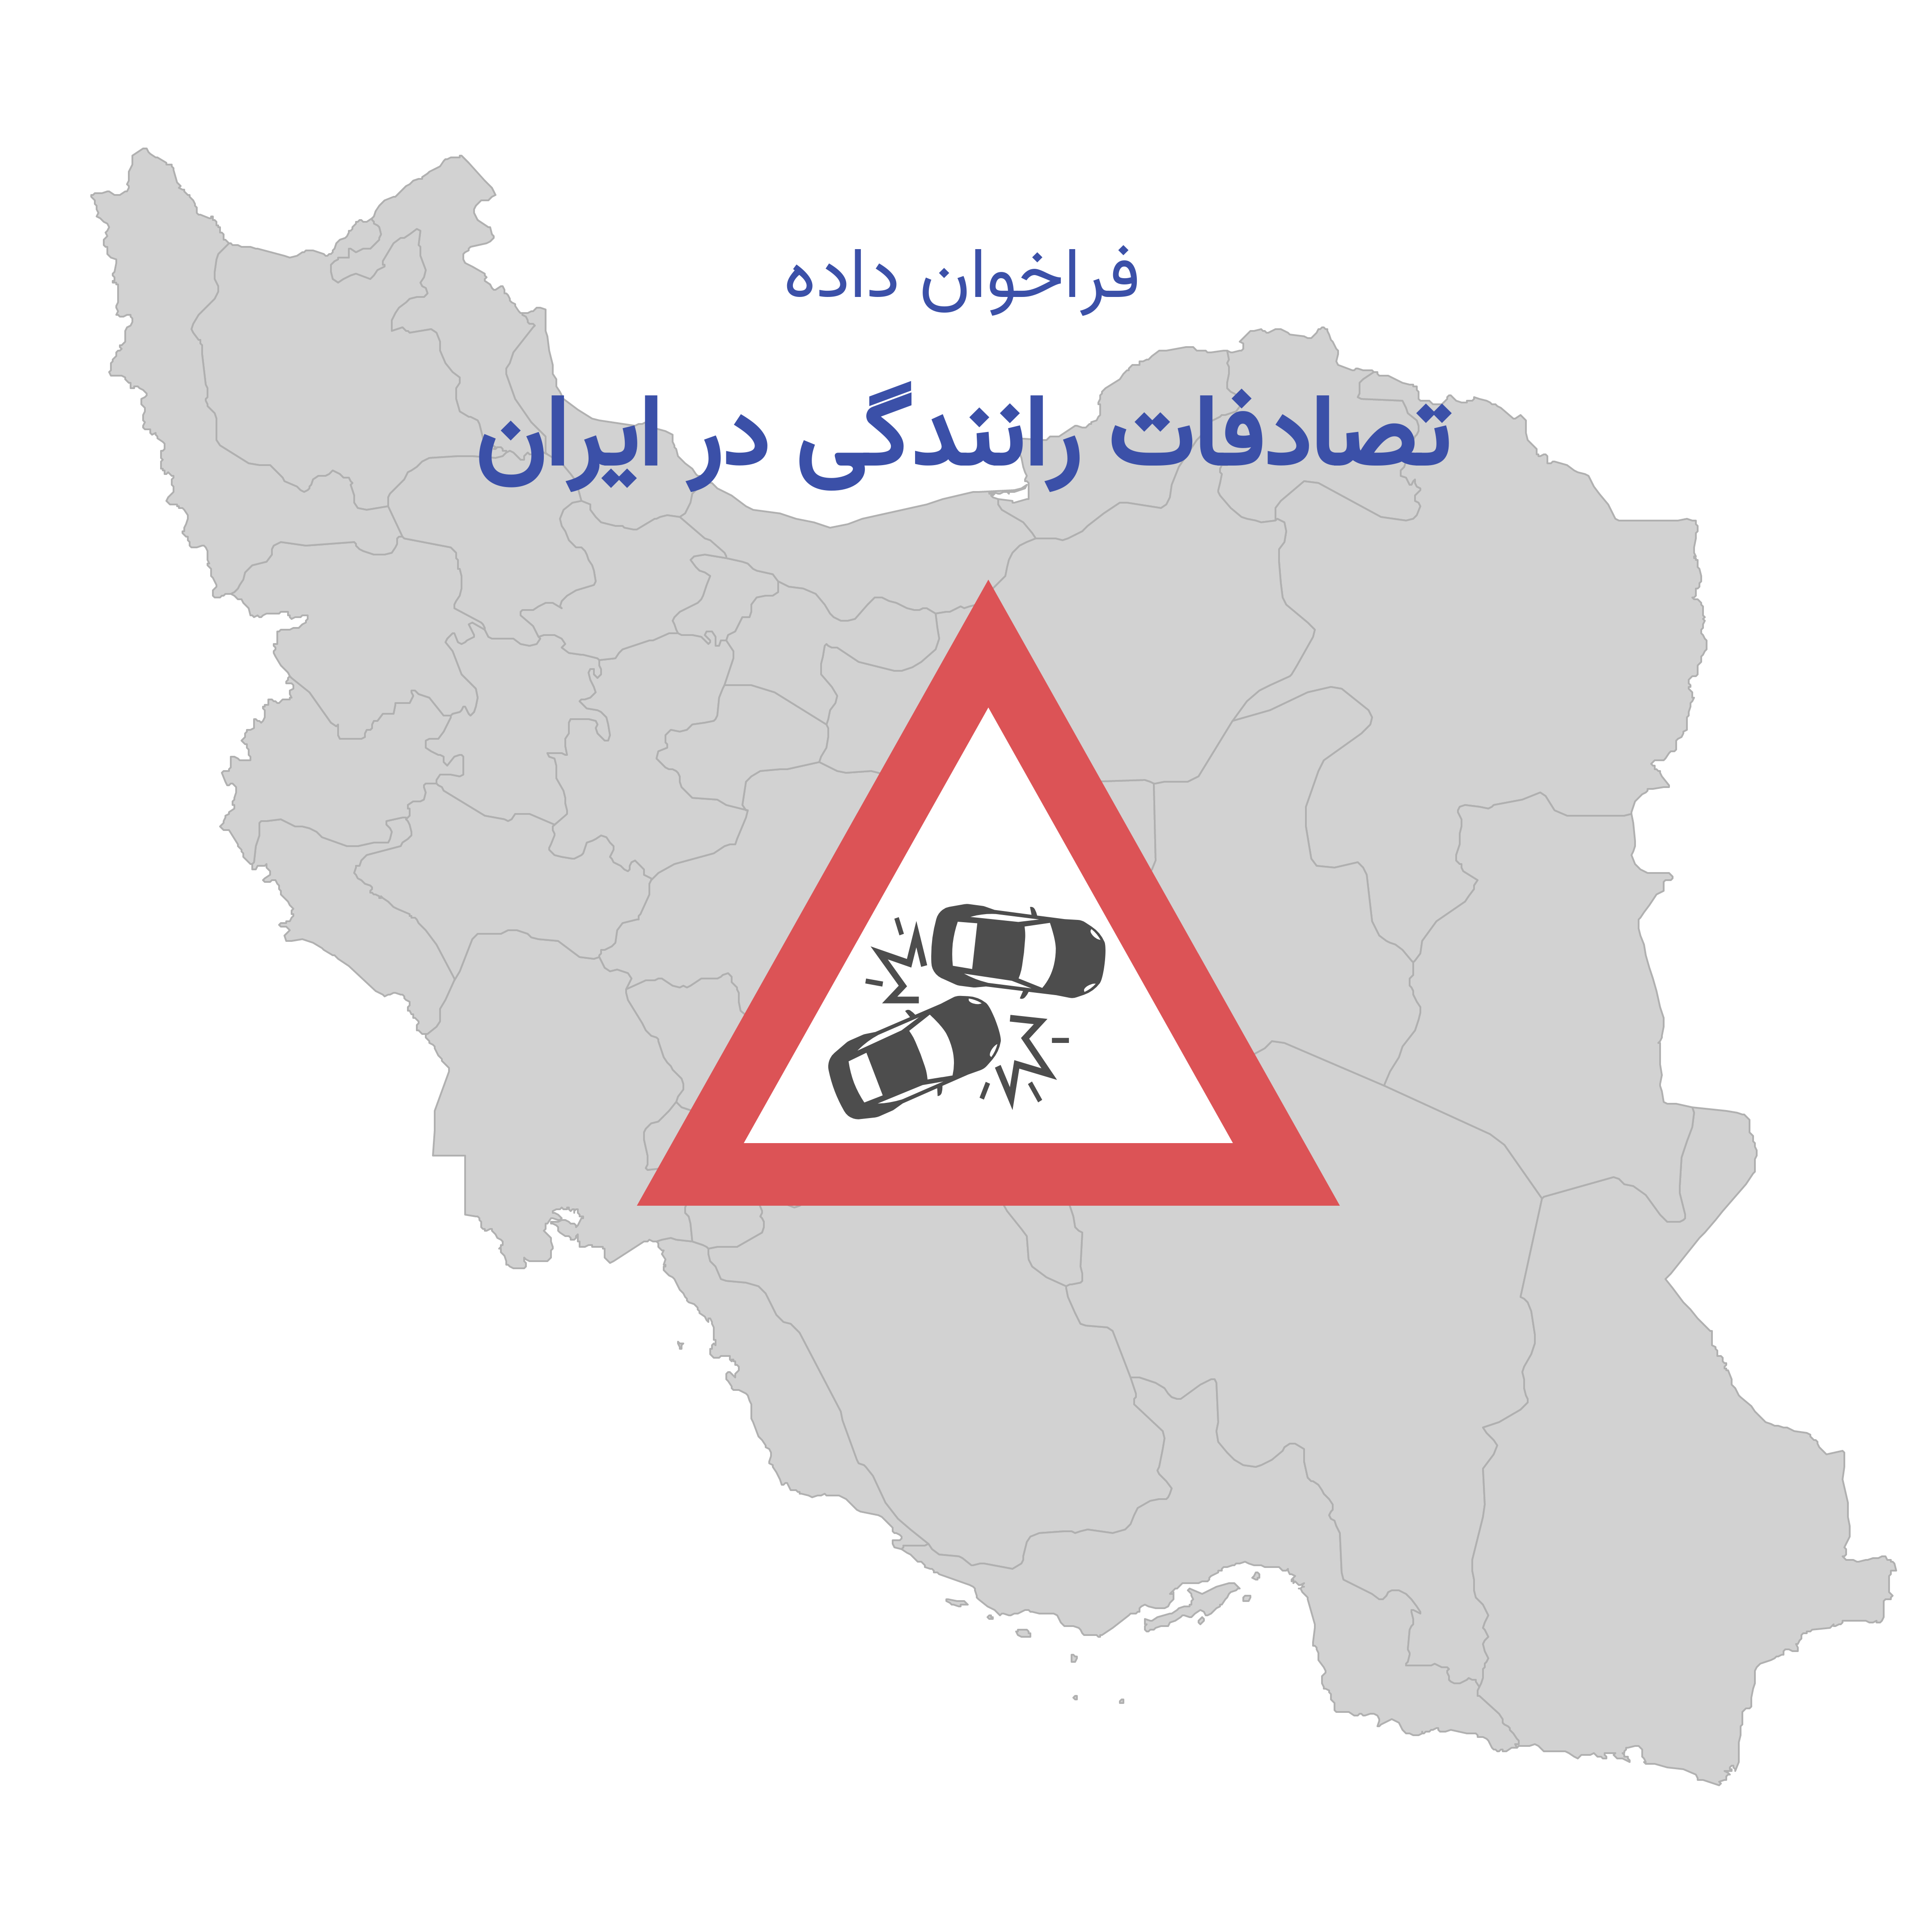 تصادف با ماشین در ایران